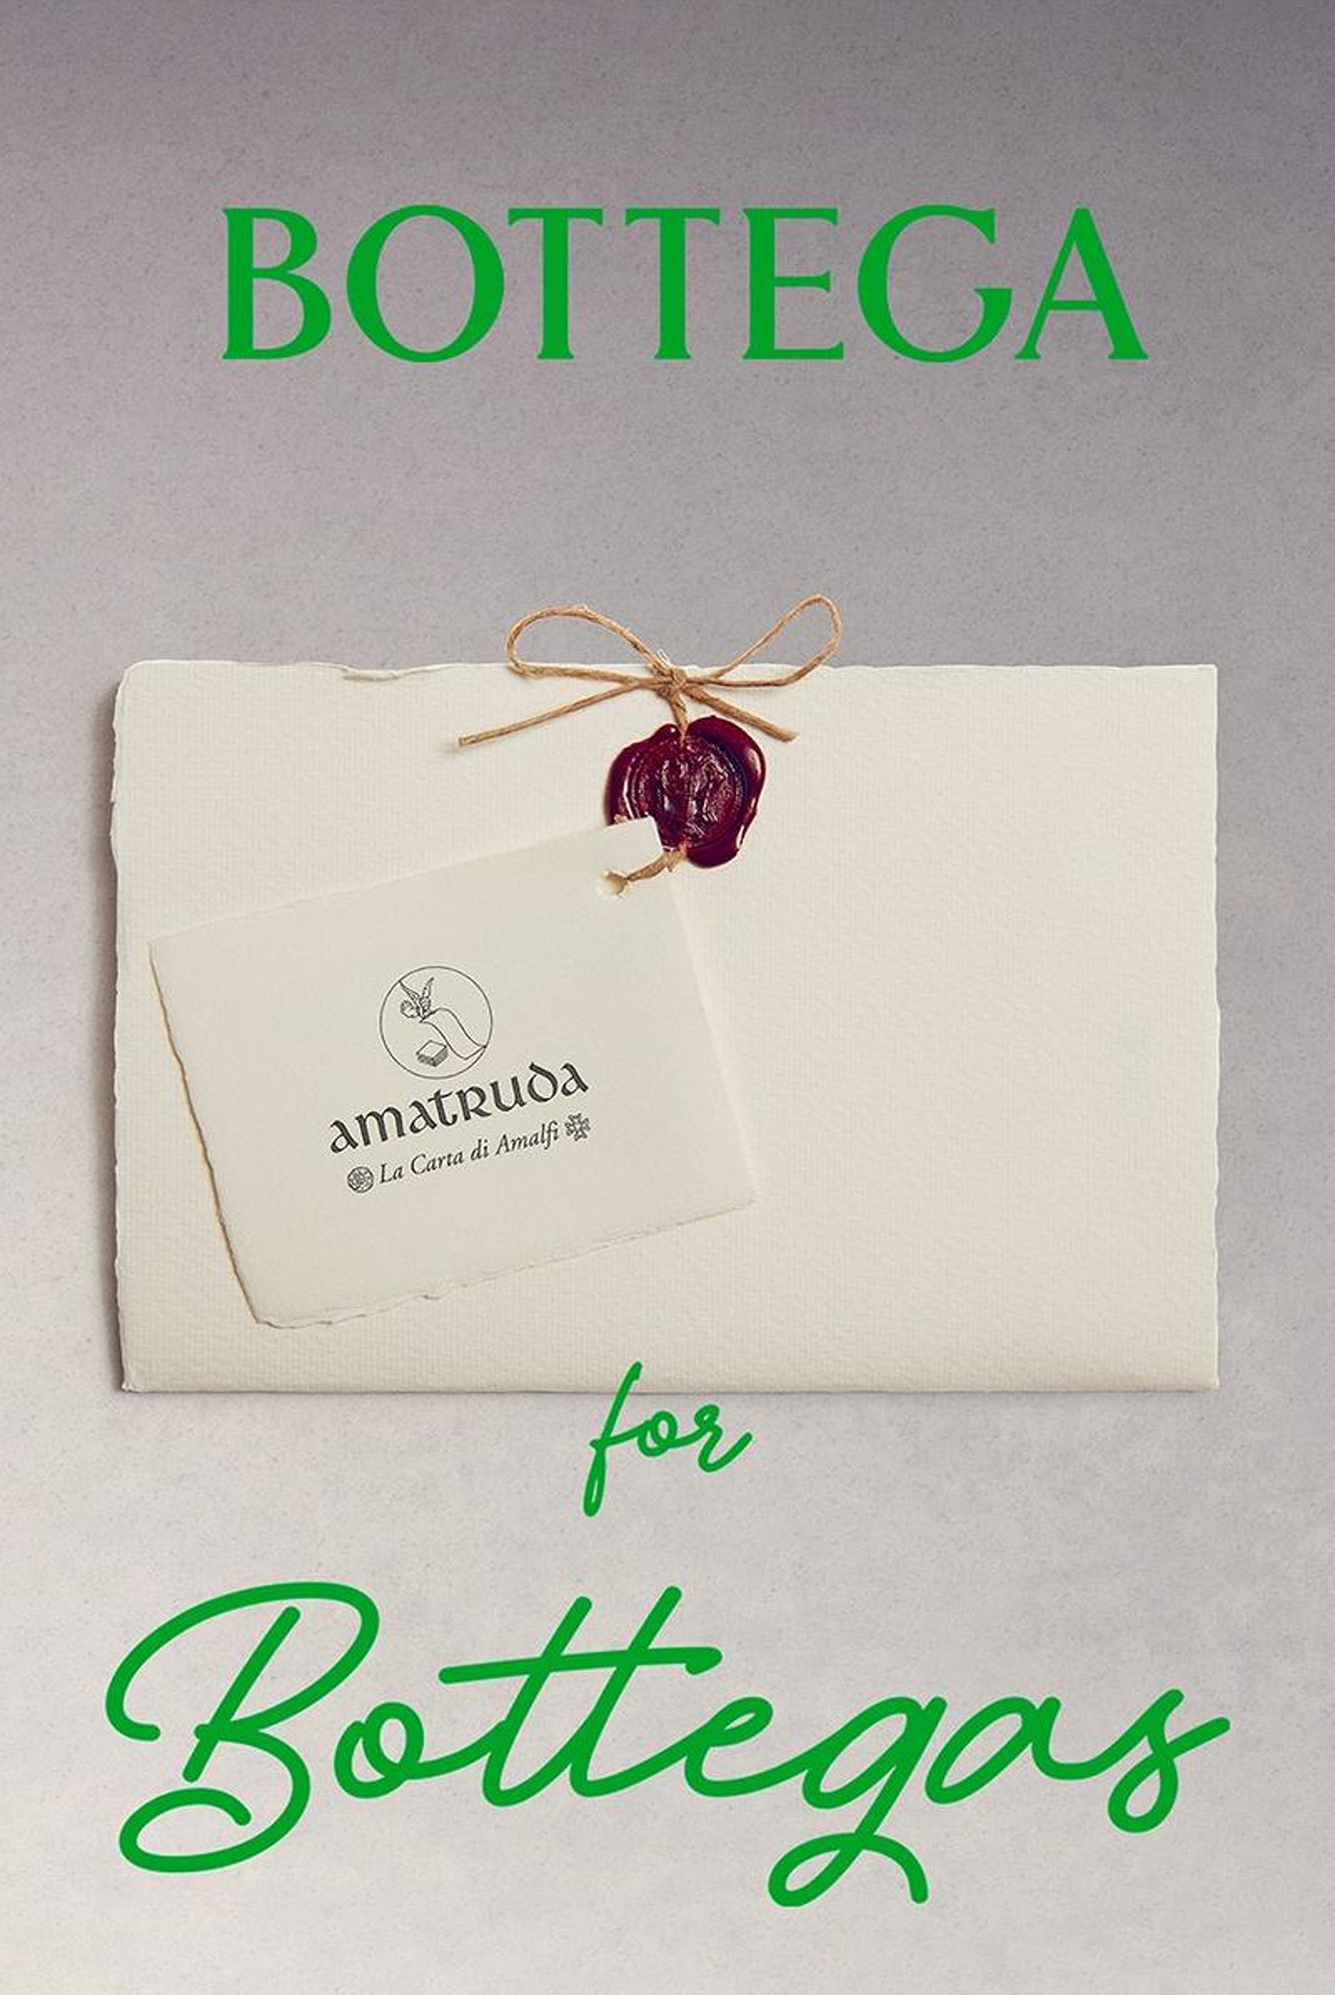 為何「破壞」品牌標誌？「Bottega For Bottegas」企劃如何致敬意大利的傳統工藝？